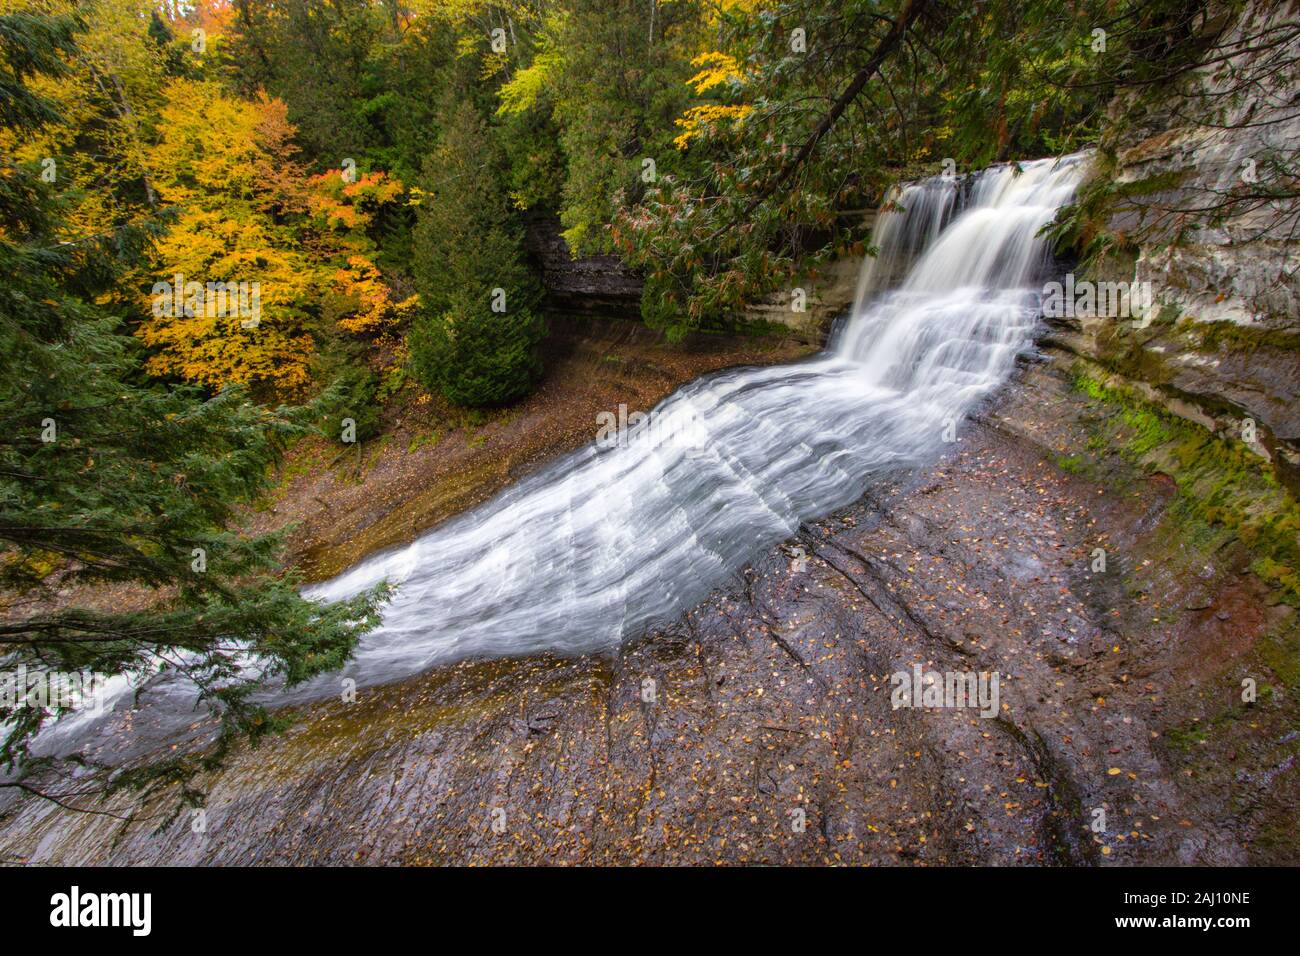 Michigan automne Cascade. Rire Whitefish Falls Scenic site entouré de feuillage d'automne dans la Péninsule Supérieure du Michigan. Banque D'Images